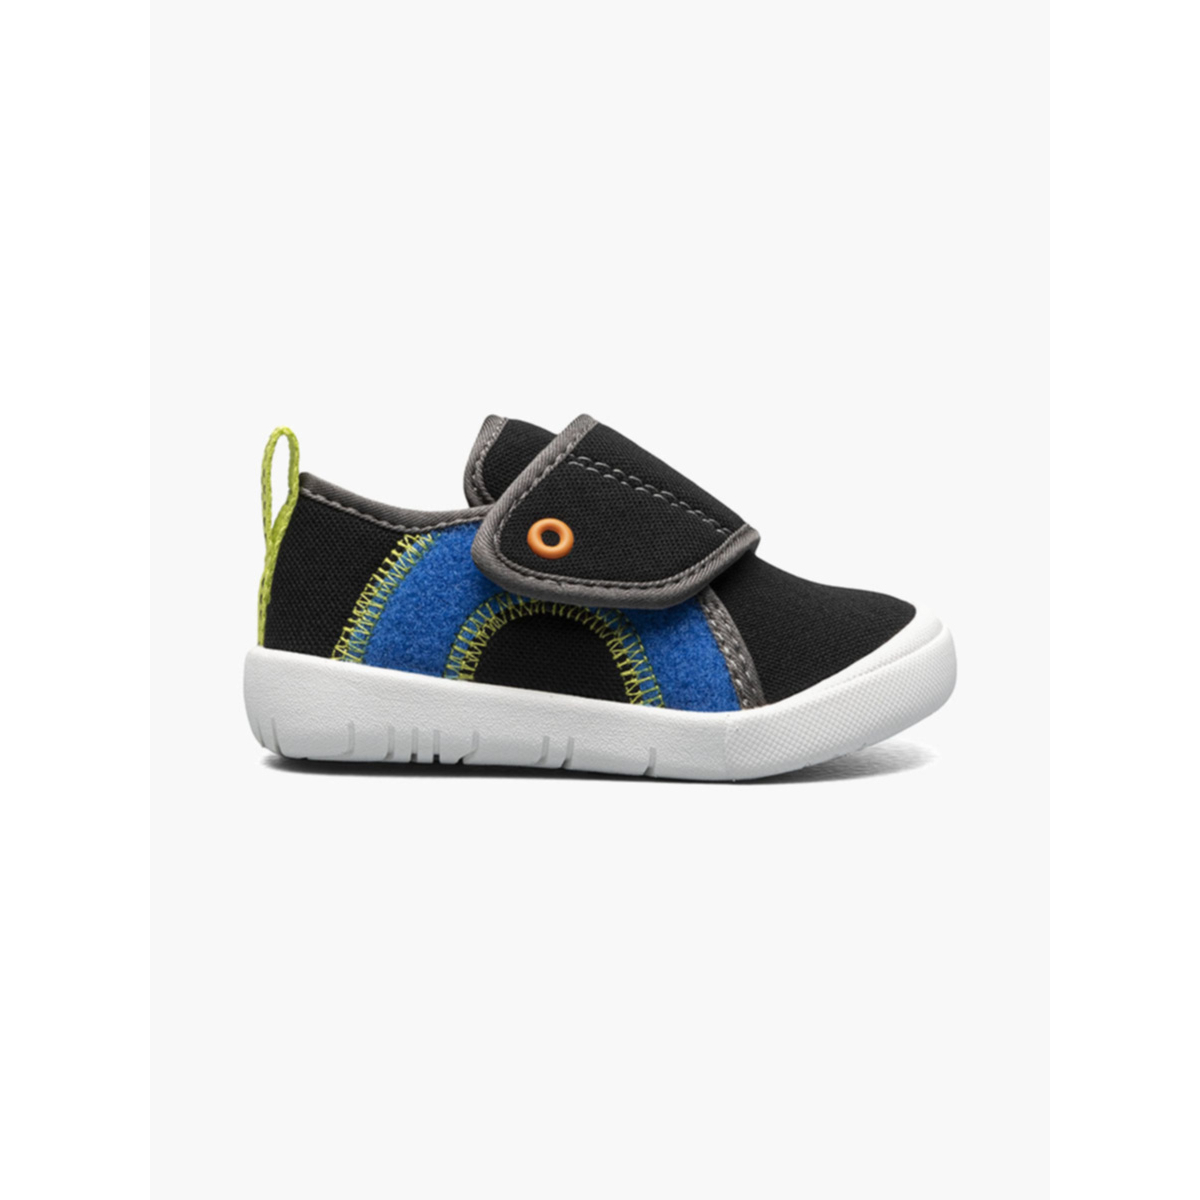 BOGS Unisex Baby Kicker Hook And Loop Shoe Sneaker Black Multi - 72811I-009 1 BLACK MULTI - BLACK MULTI, 10 Little Kid